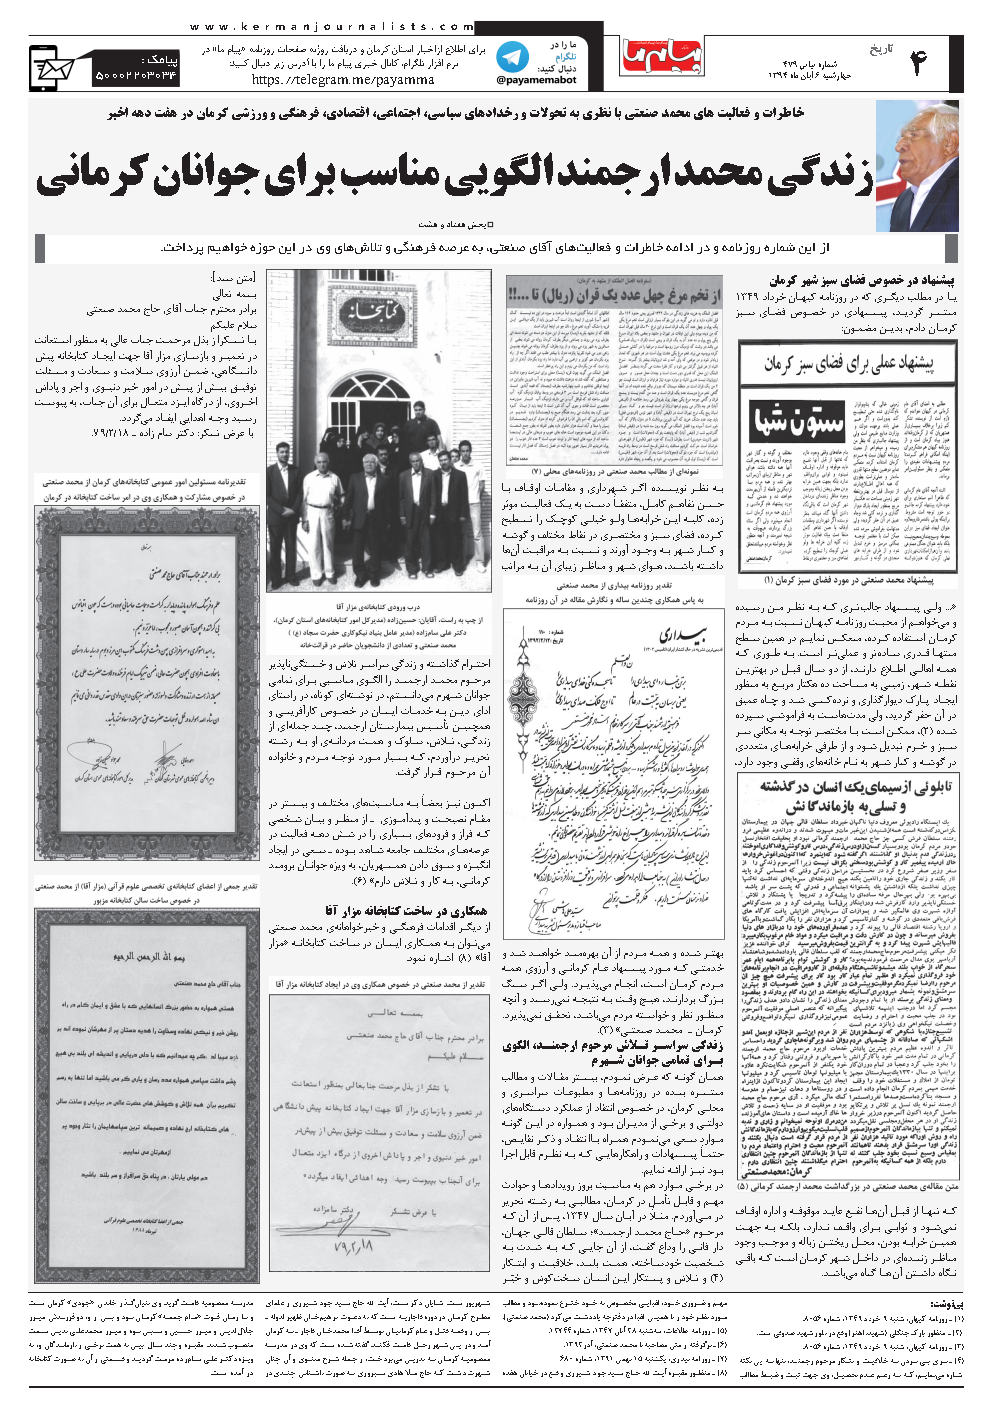 صفحه تاریخ شماره شماره ۴۷۹ روزنامه پیام ما